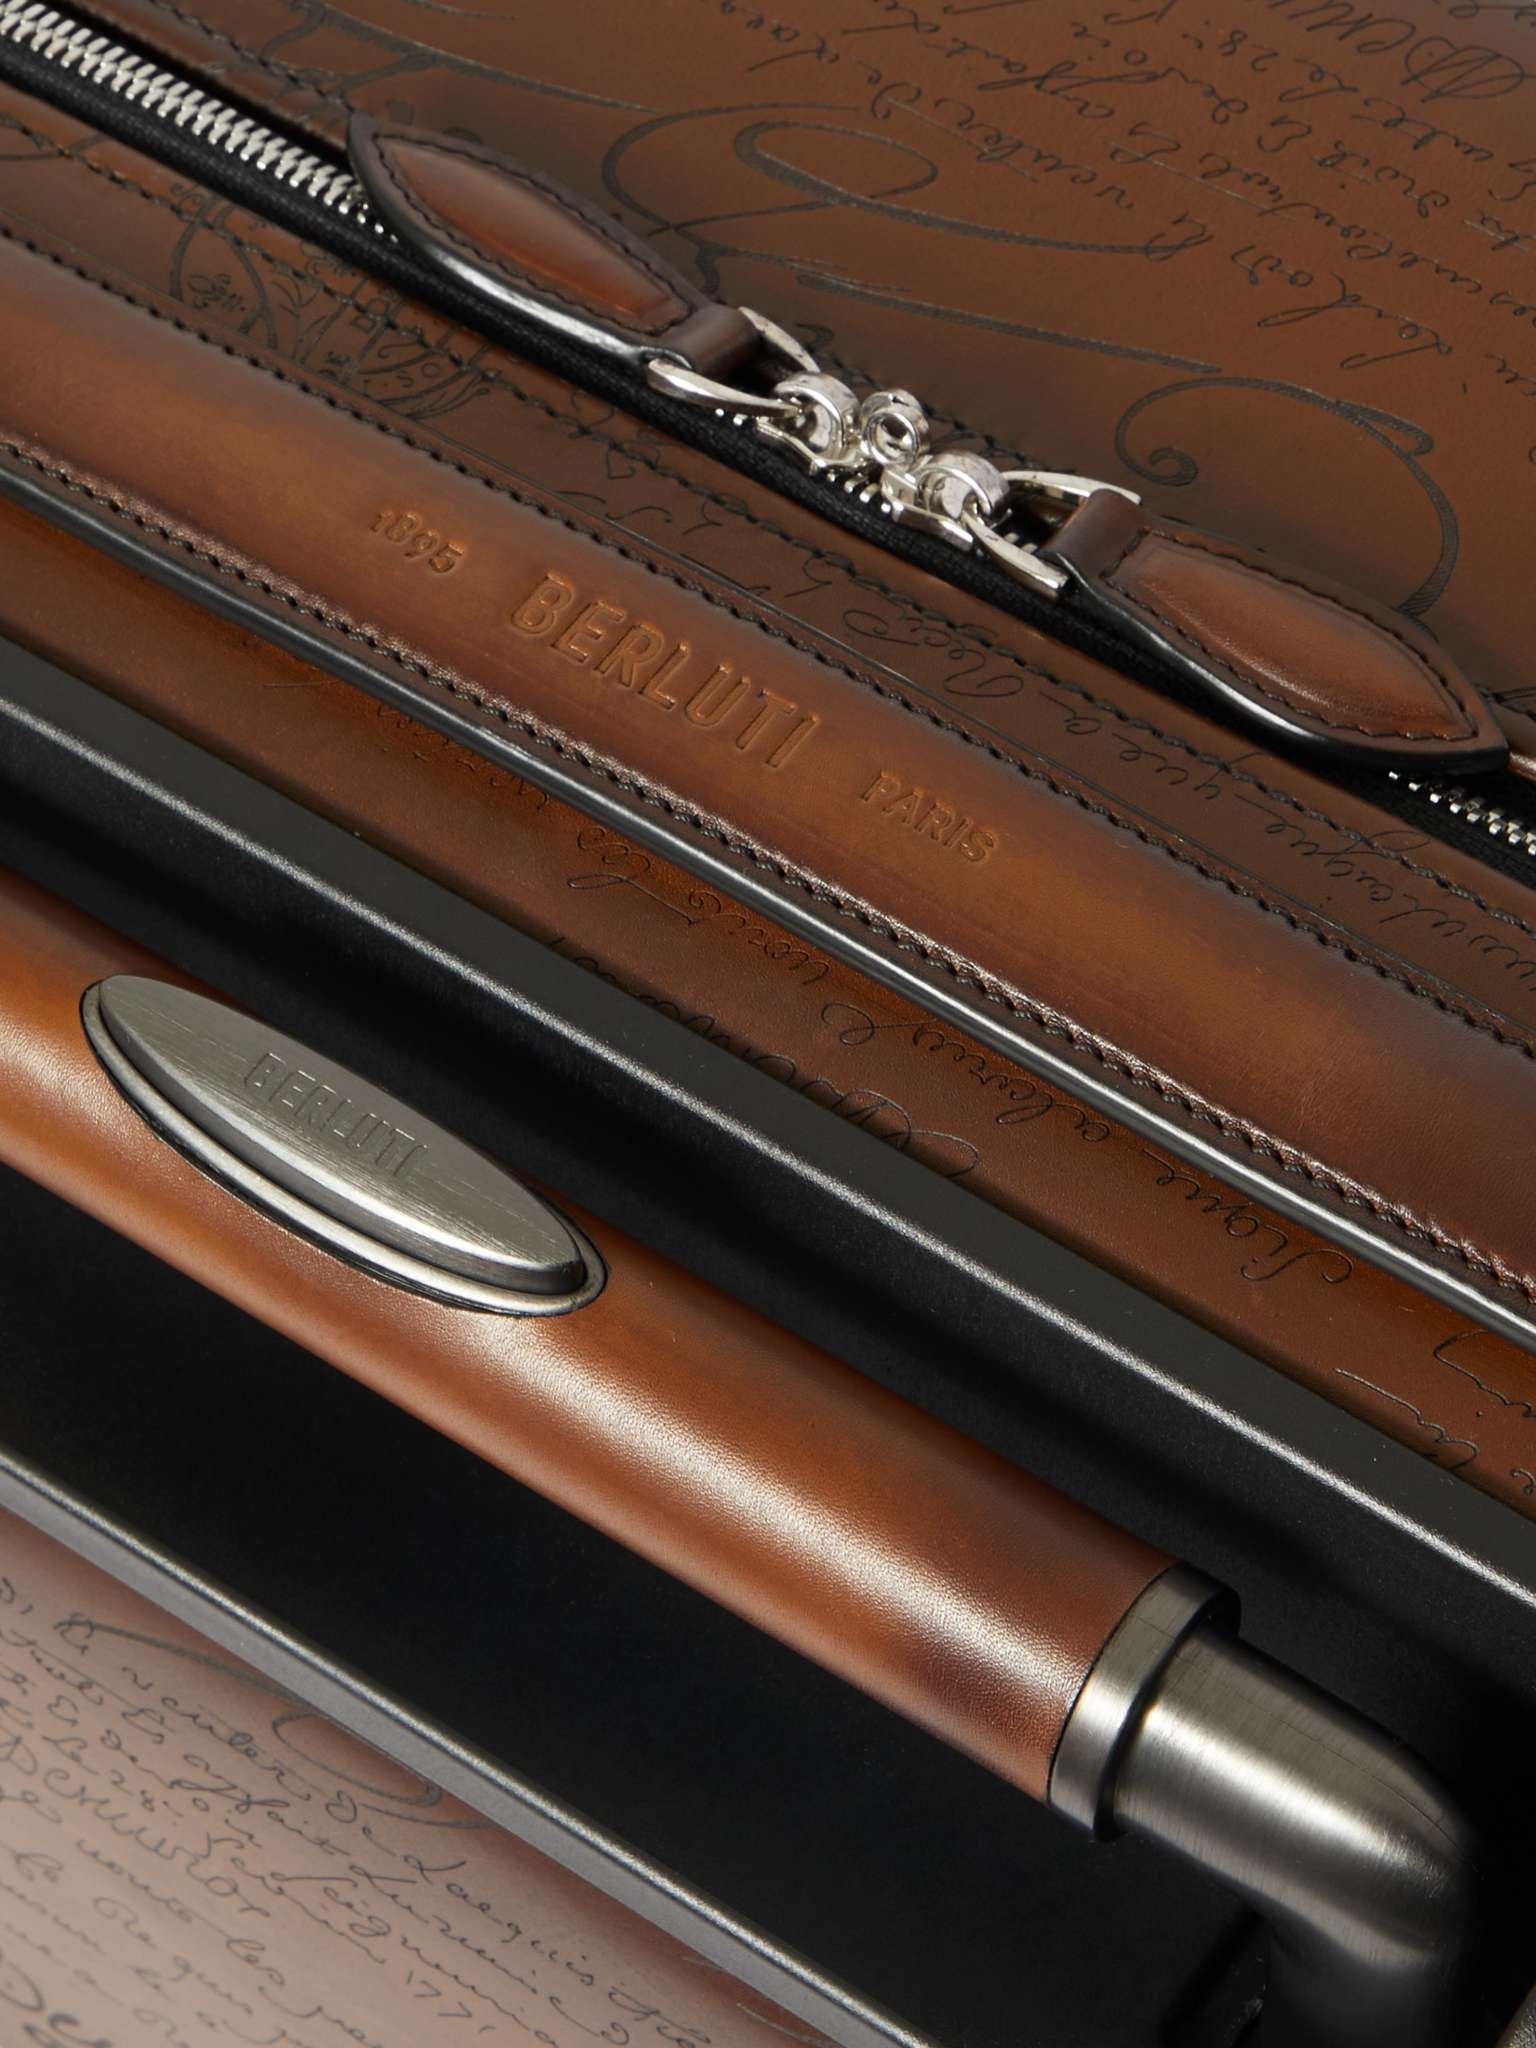 Formula 1005 Scritto Venezia Leather Suitcase - 5